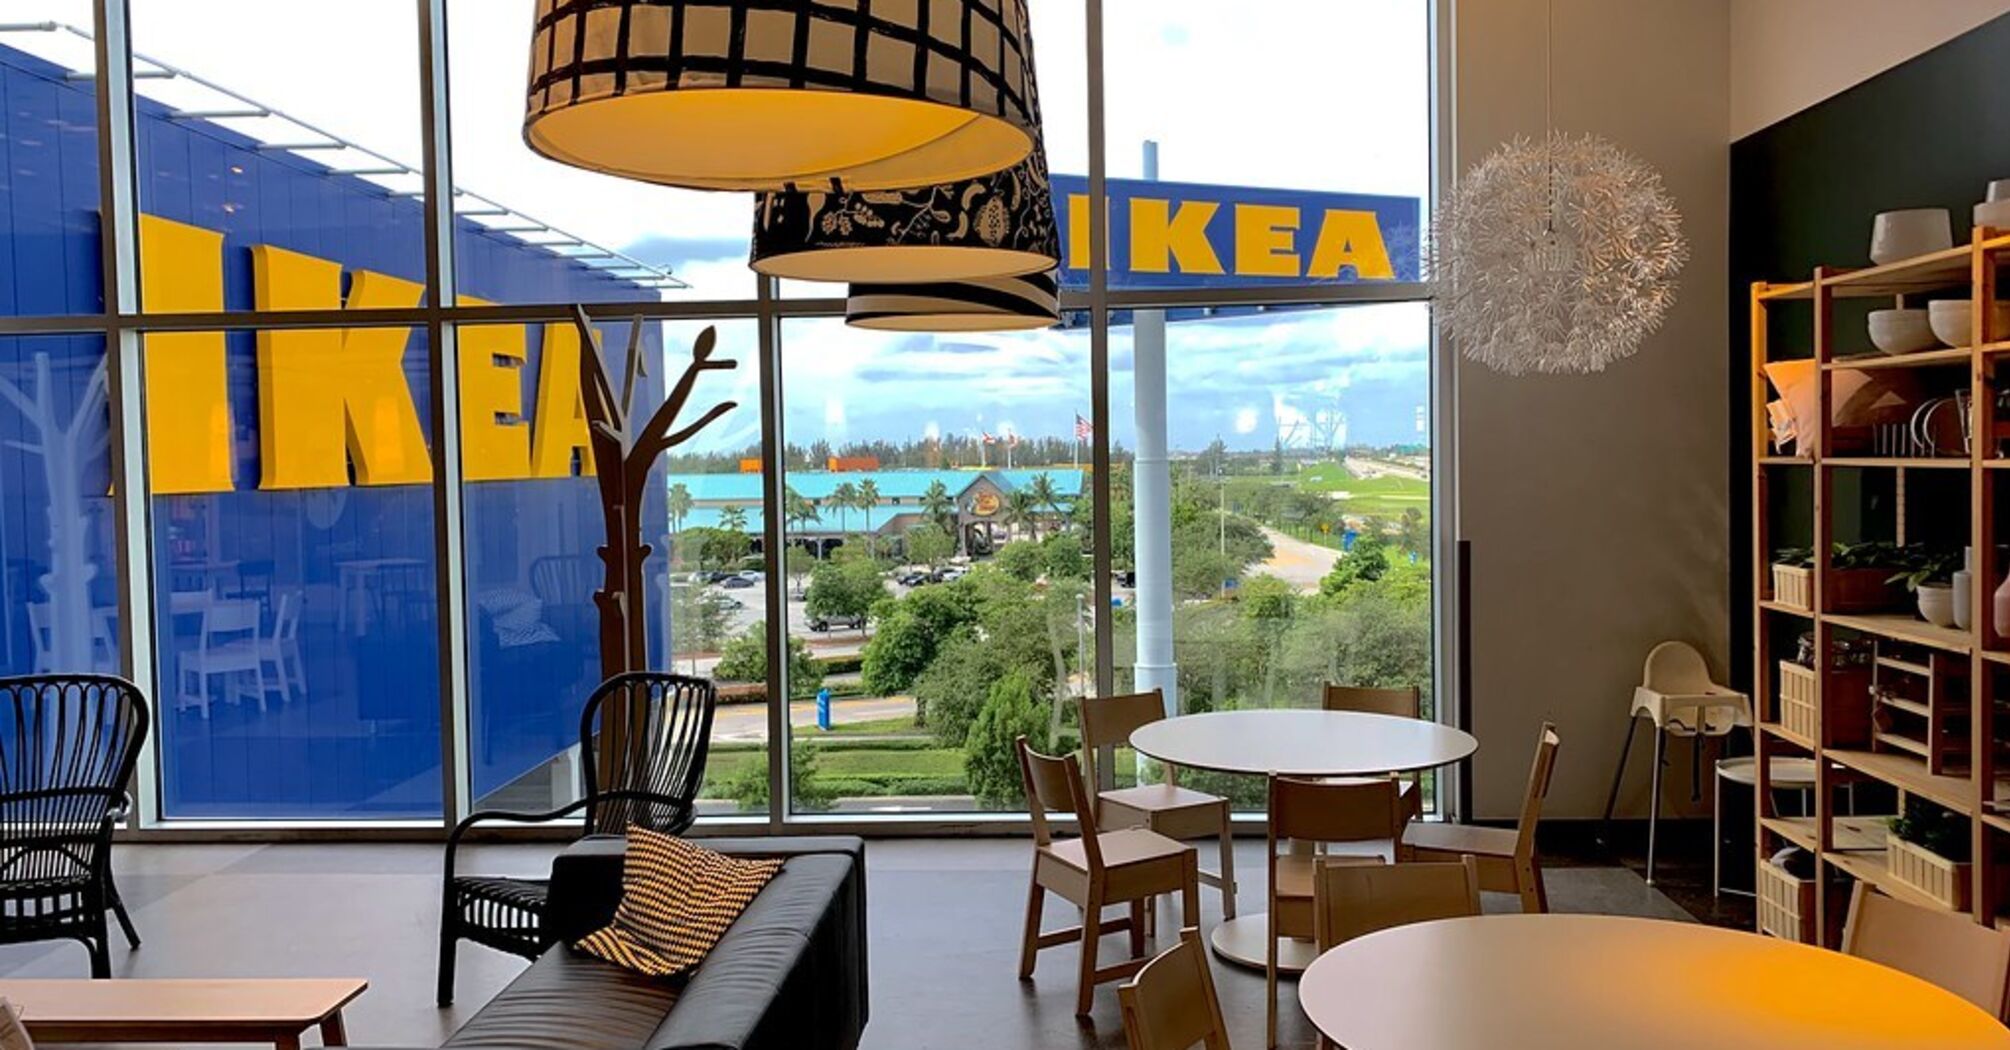 IKEA may reopen in Ukraine